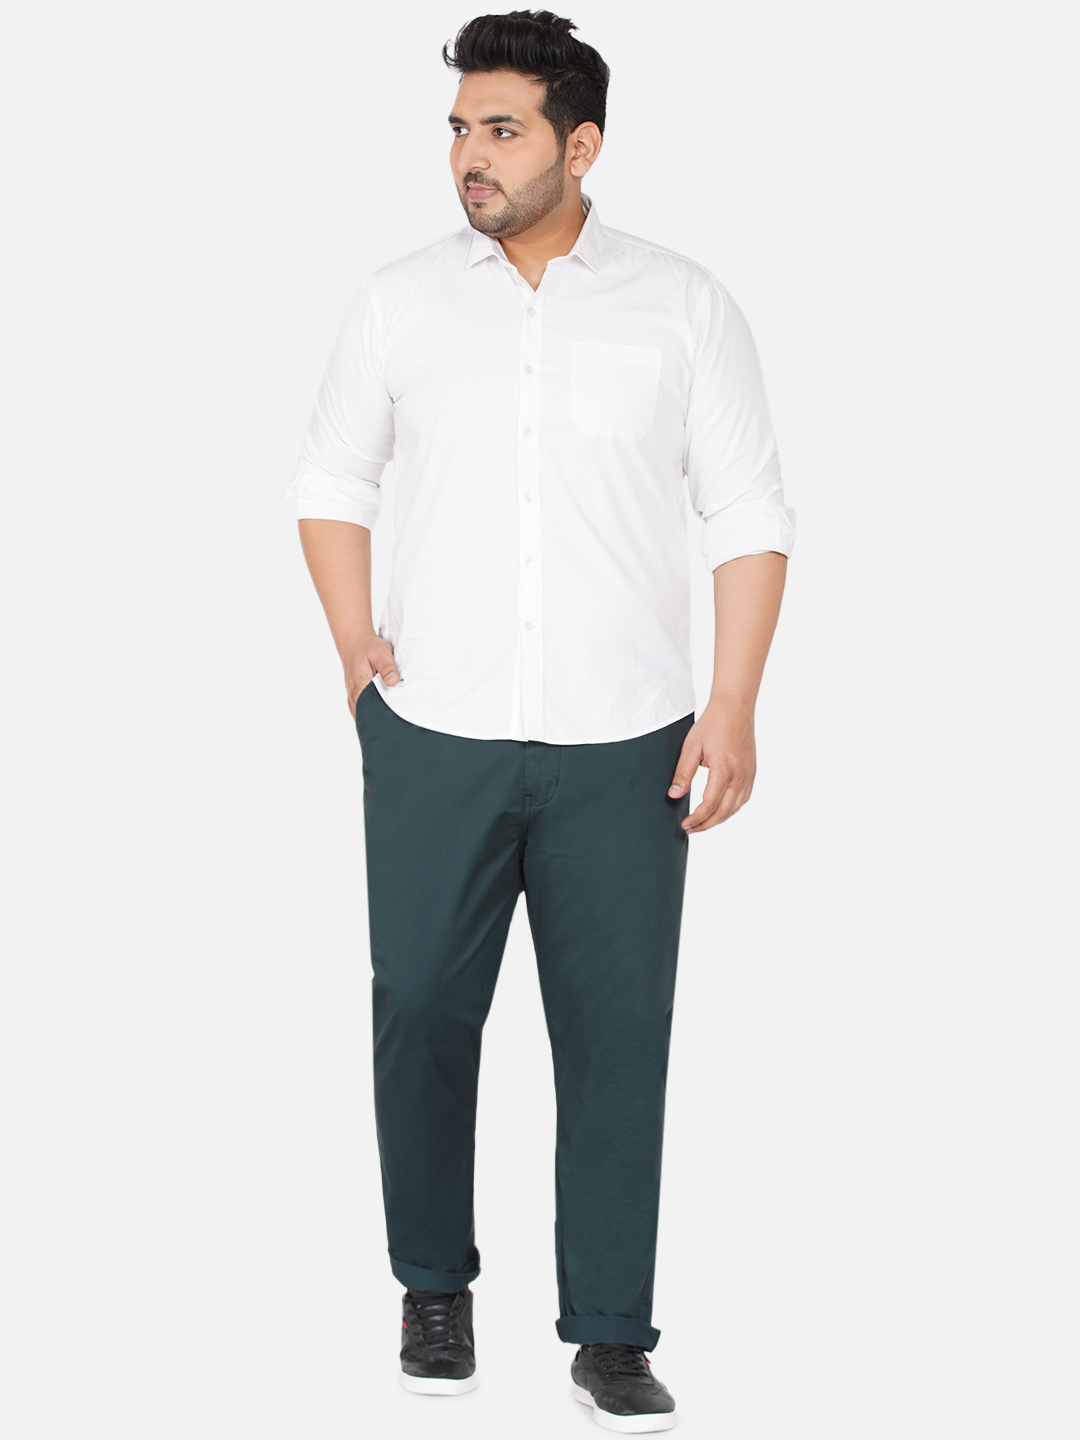 bottomwear/trousers/JPTR2195V/jptr2195v-6.jpg